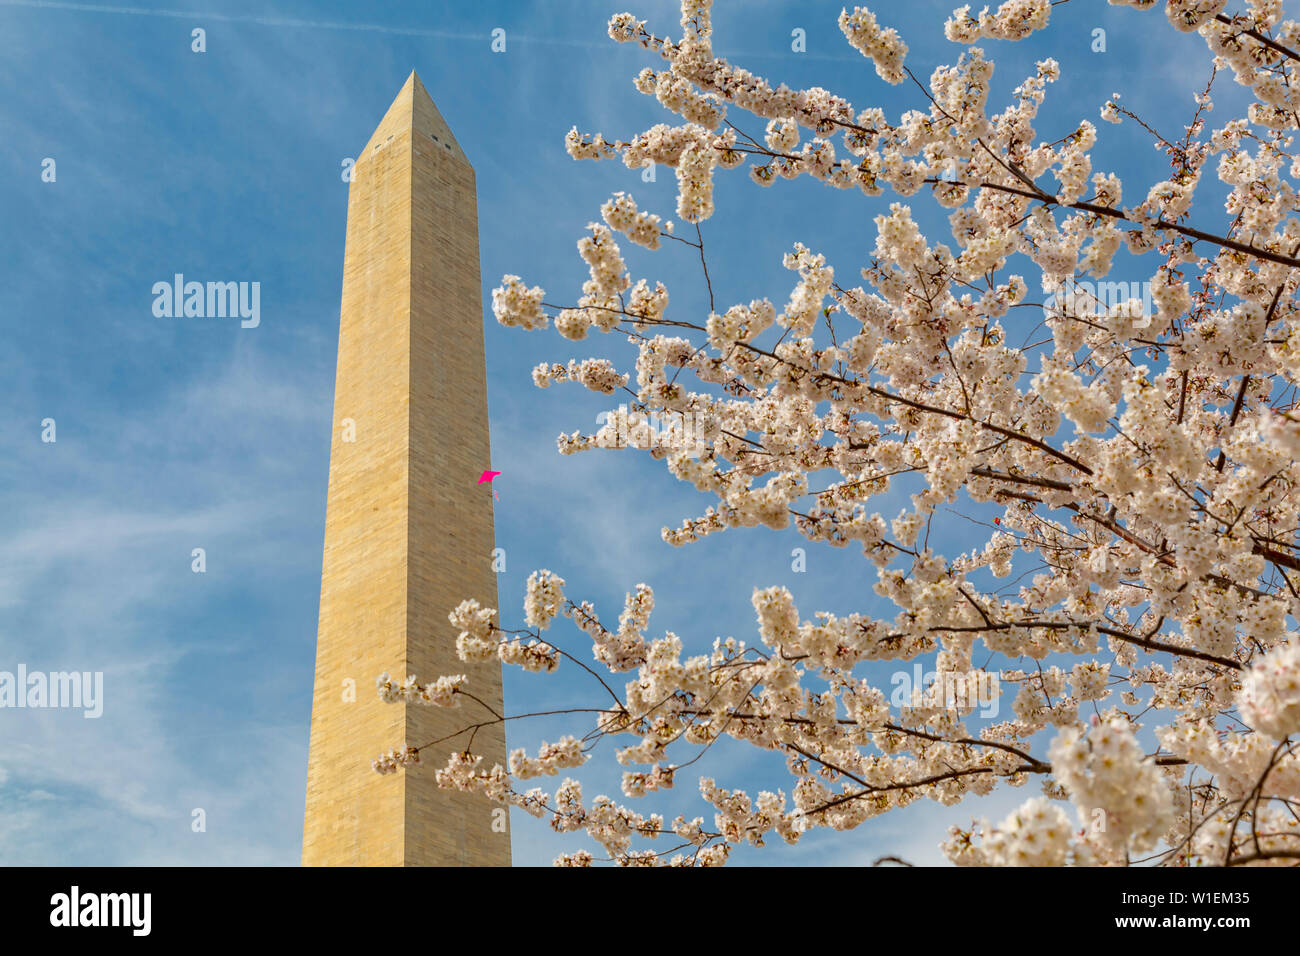 Blick auf das Washington Monument und spring blossom, Washington D.C., Vereinigte Staaten von Amerika, Nordamerika Stockfoto